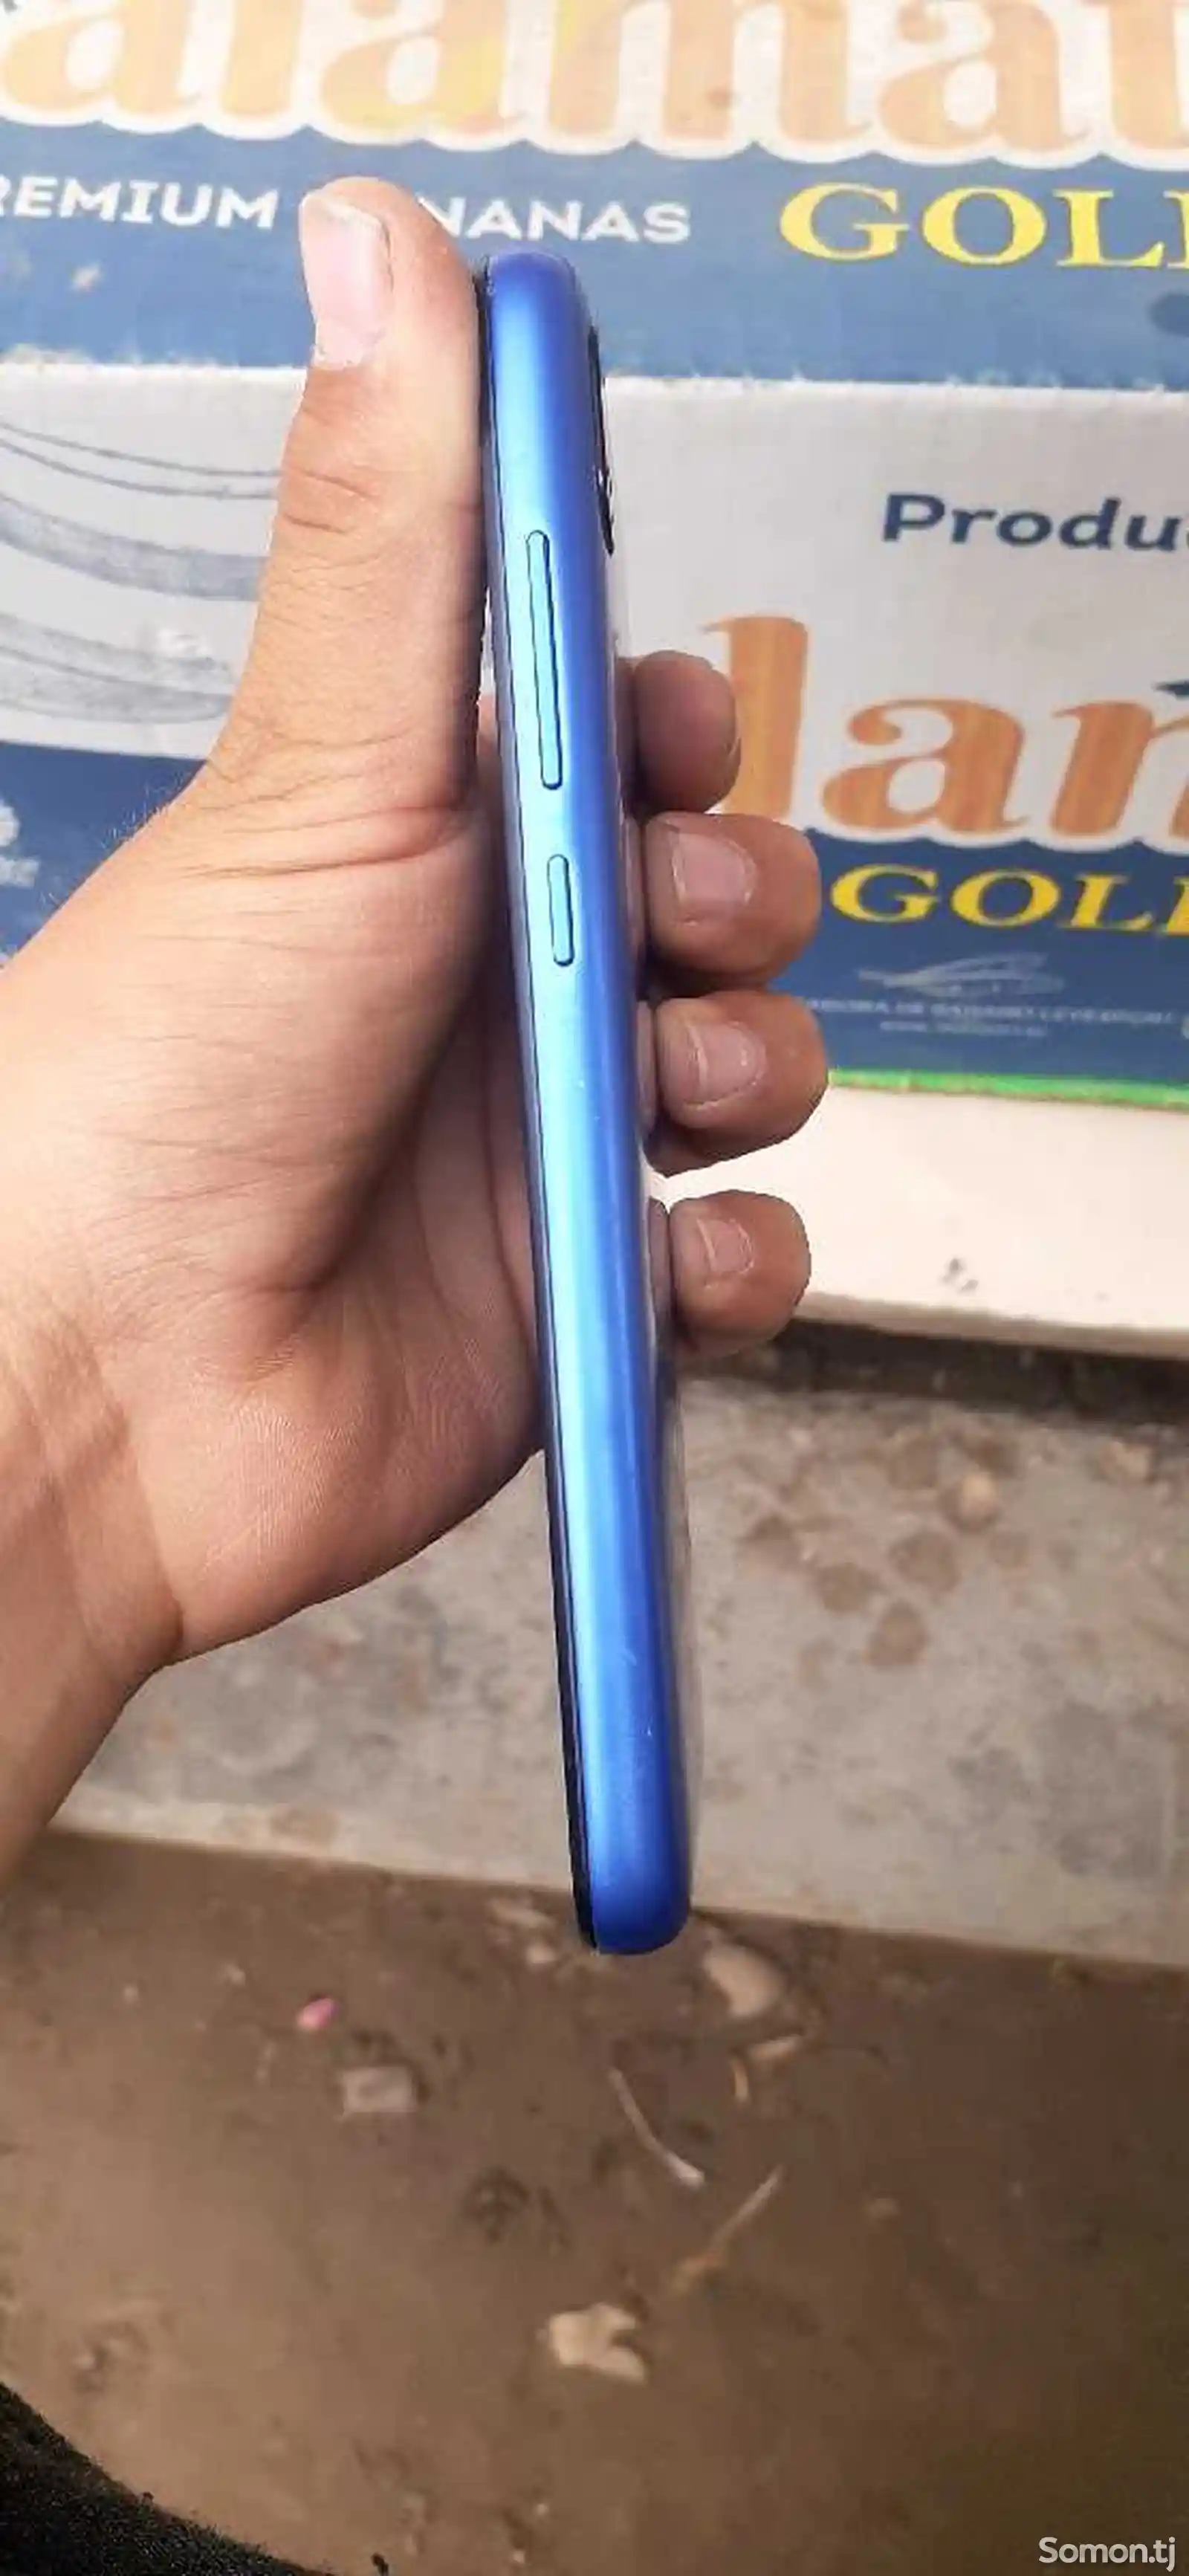 Xiaomi Redmi 7A-3